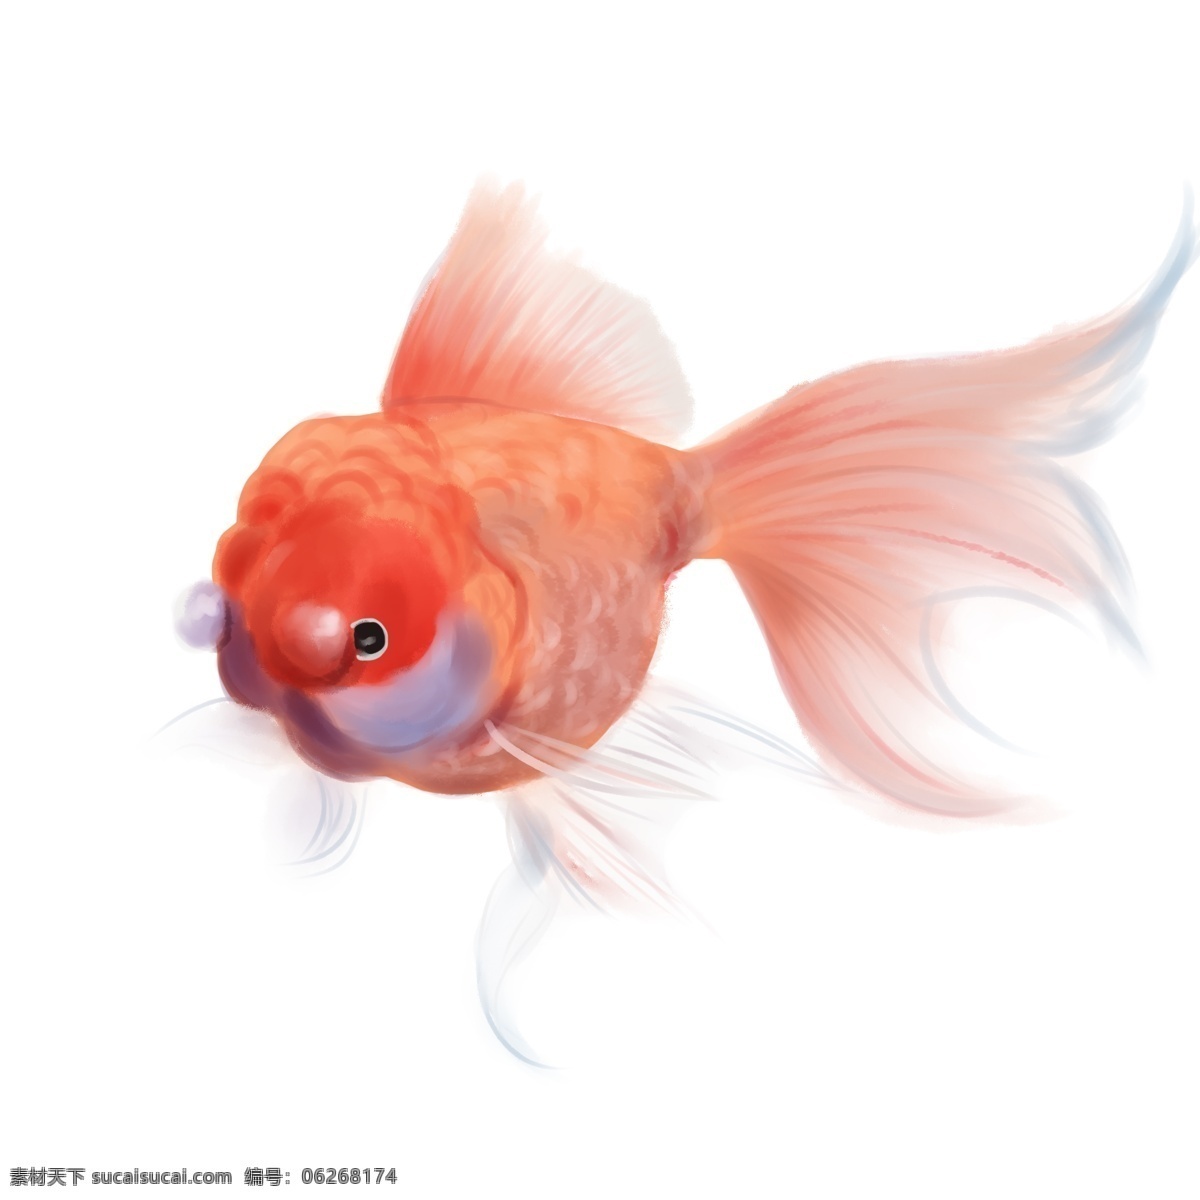 红色 写实 金鱼 写实金鱼 手绘金鱼 红色金鱼 漂亮的金鱼 手绘小金鱼 仿真金鱼 红色鱼 手绘 插画